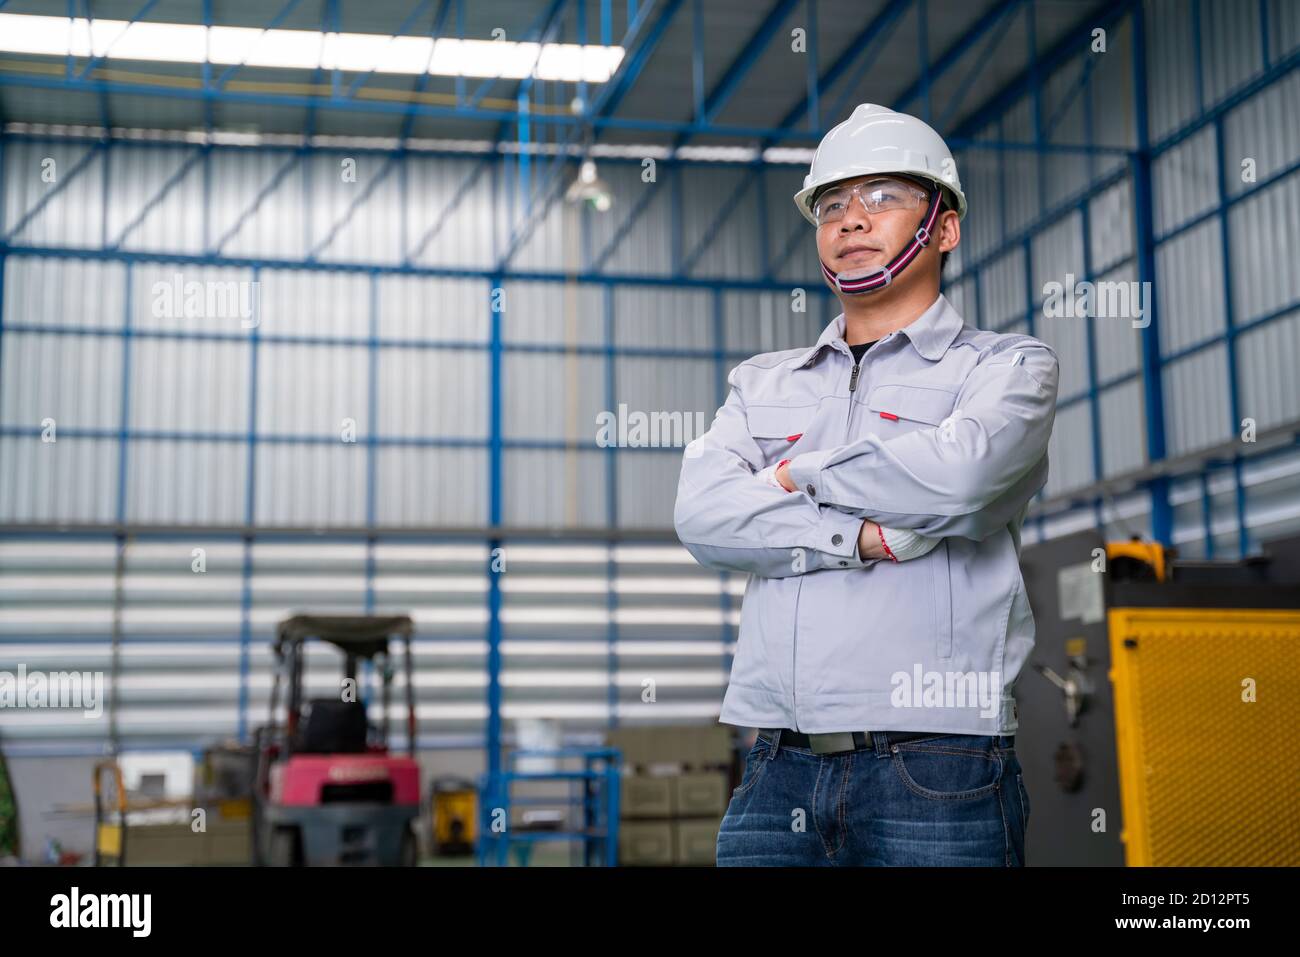 Portrait d'un travailleur manuel asiatique est confiant avec confiance avec la tenue de travail et le casque de sécurité de haut technologie industrie propre Banque D'Images